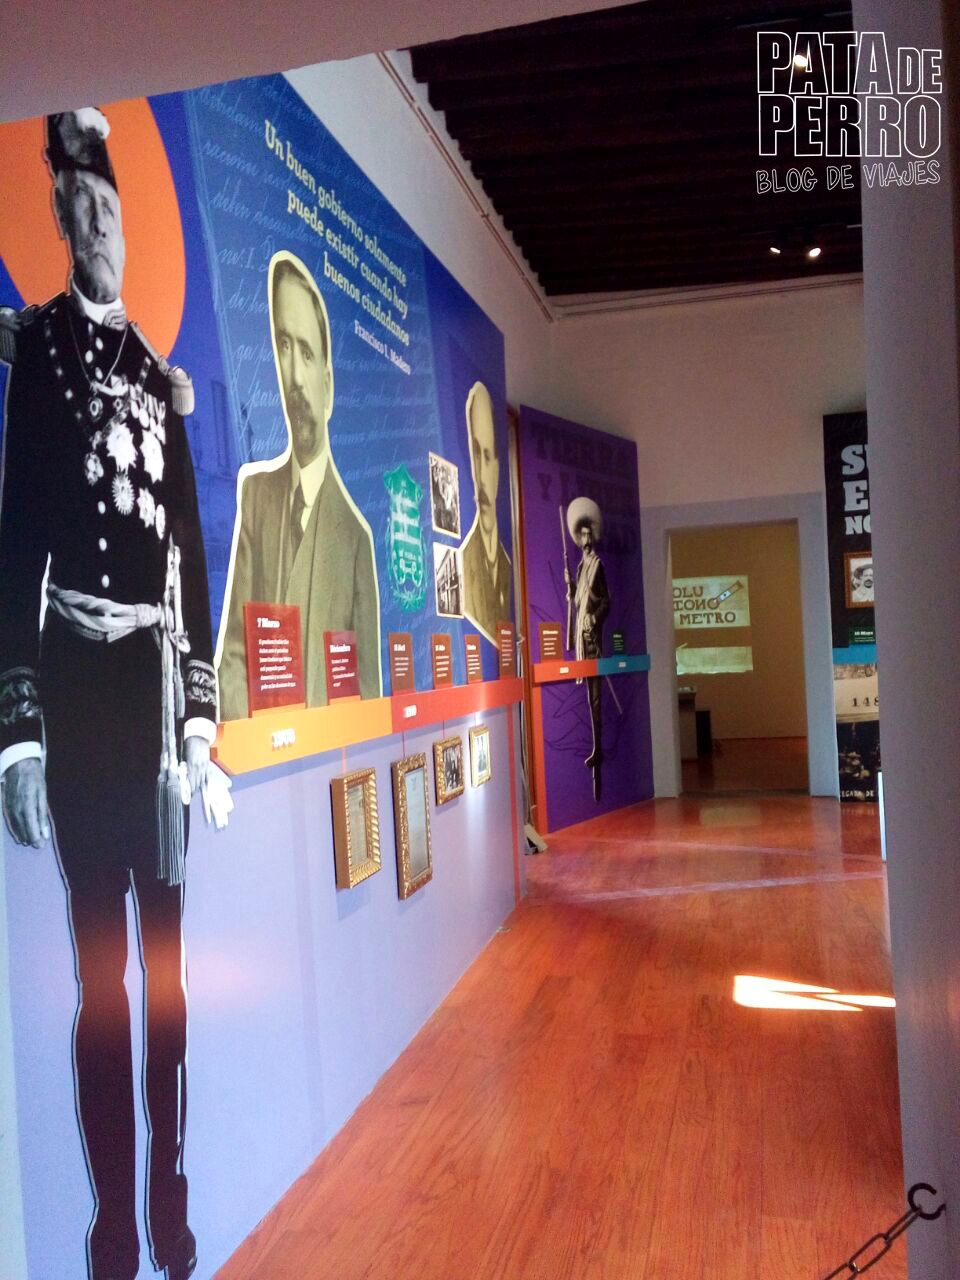 museo-regional-de-la-revolucion-mexicana-casa-de-los-hermanos-serdan-pata-de-perro-blog-de-viajes29